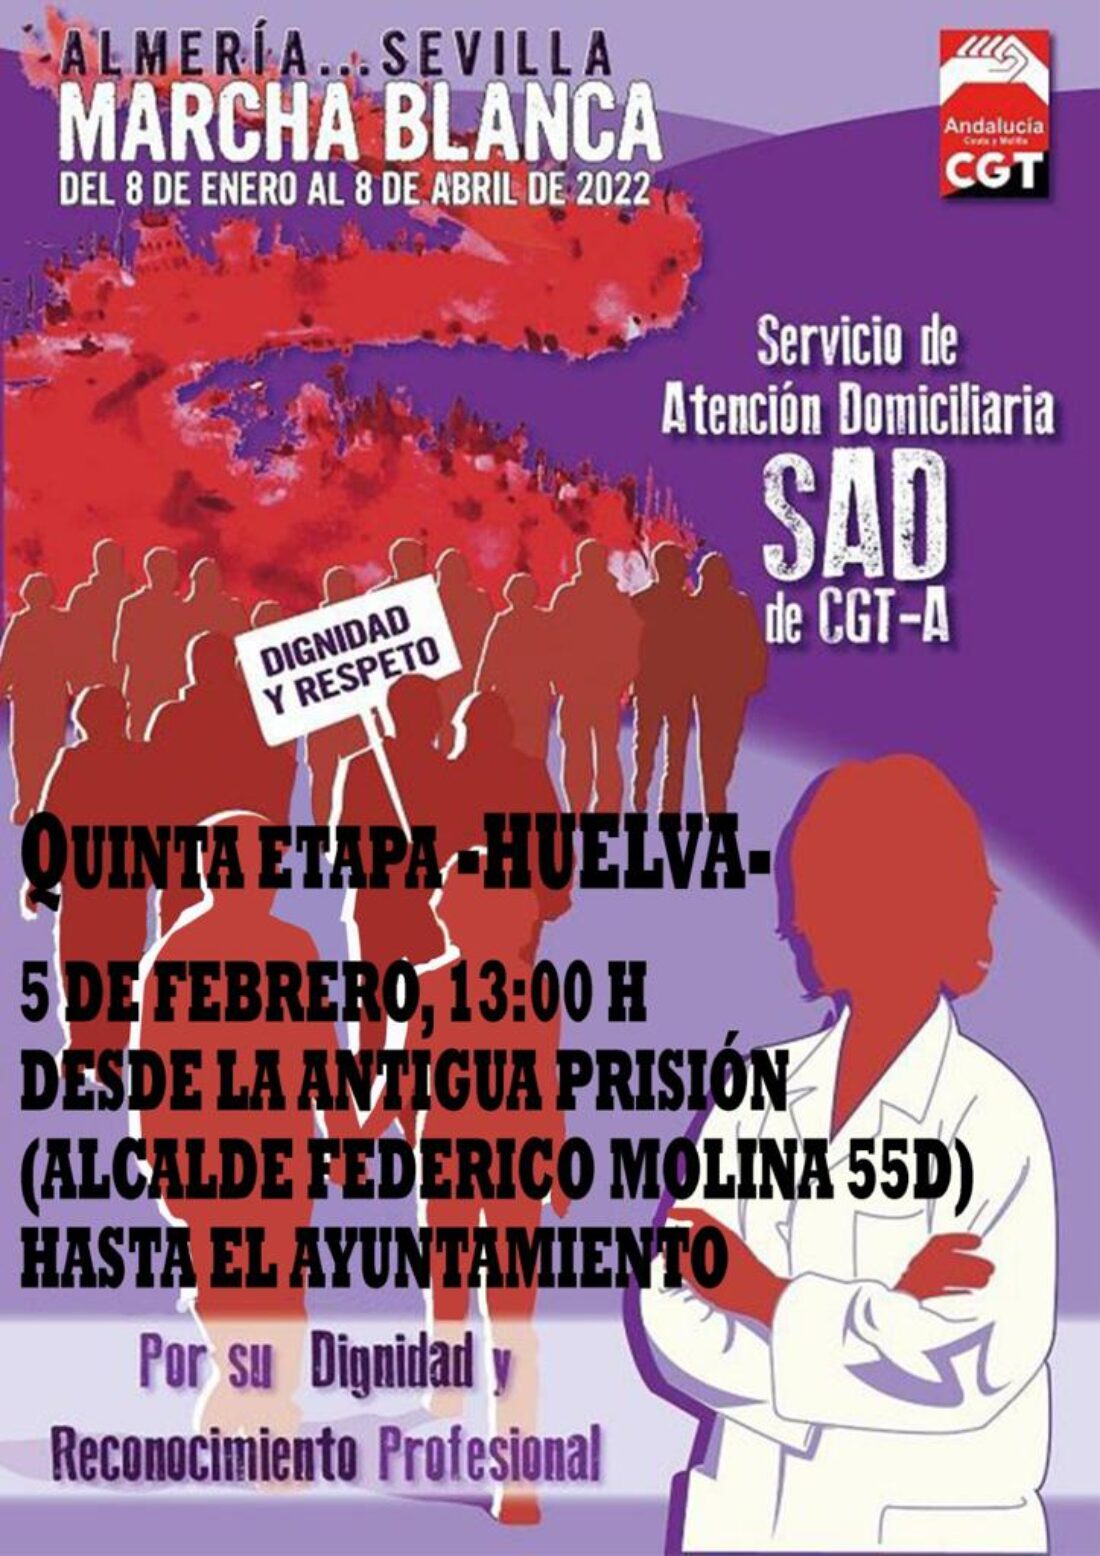 Llega a Huelva la Marcha Blanca andaluza del Servicio de Atención Domiciliaria (SAD)